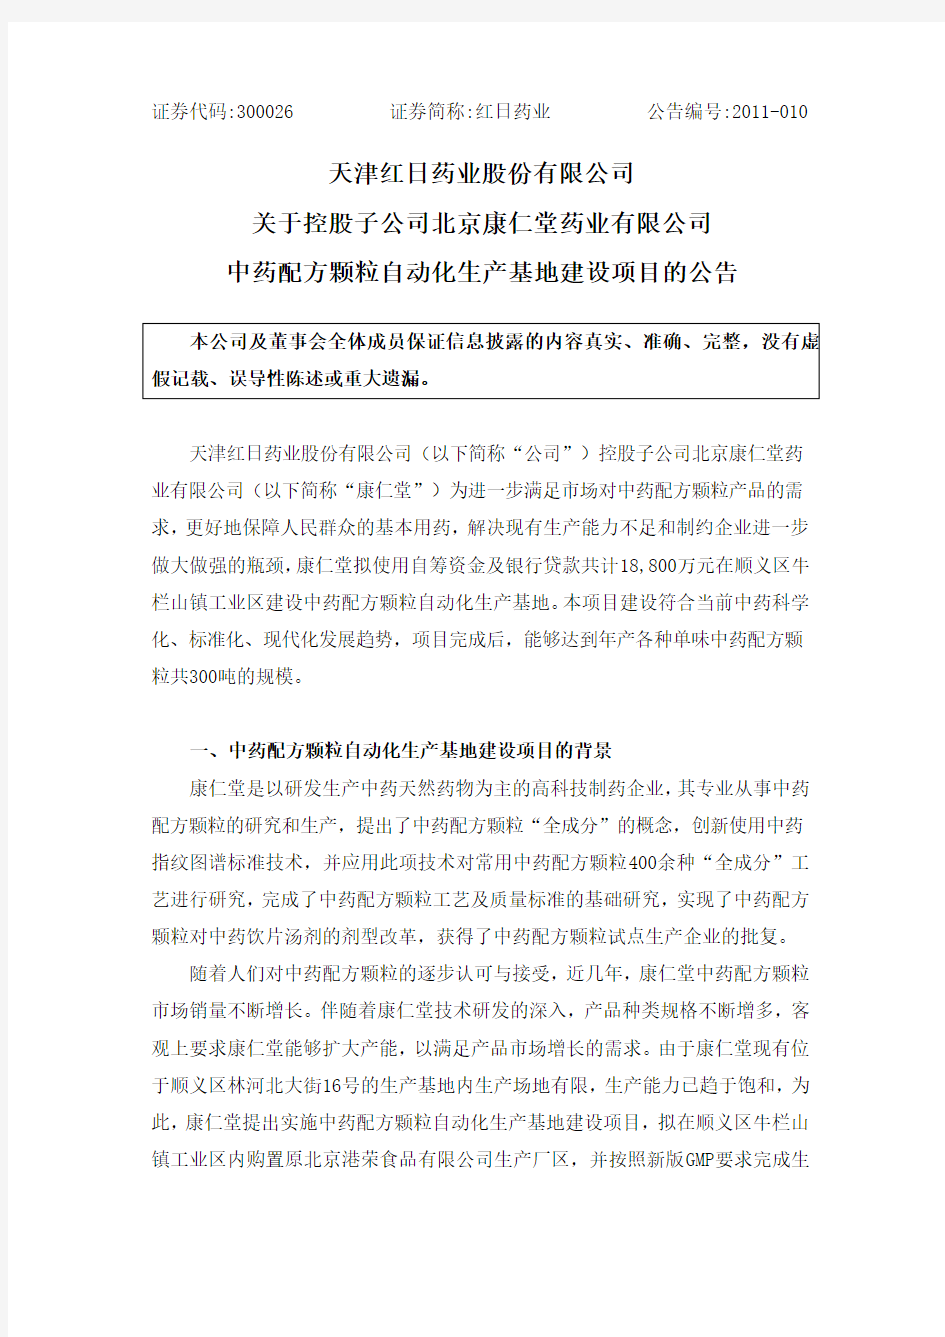 红日药业：关于控股子公司北京康仁堂药业有限公司中药配方颗粒自动